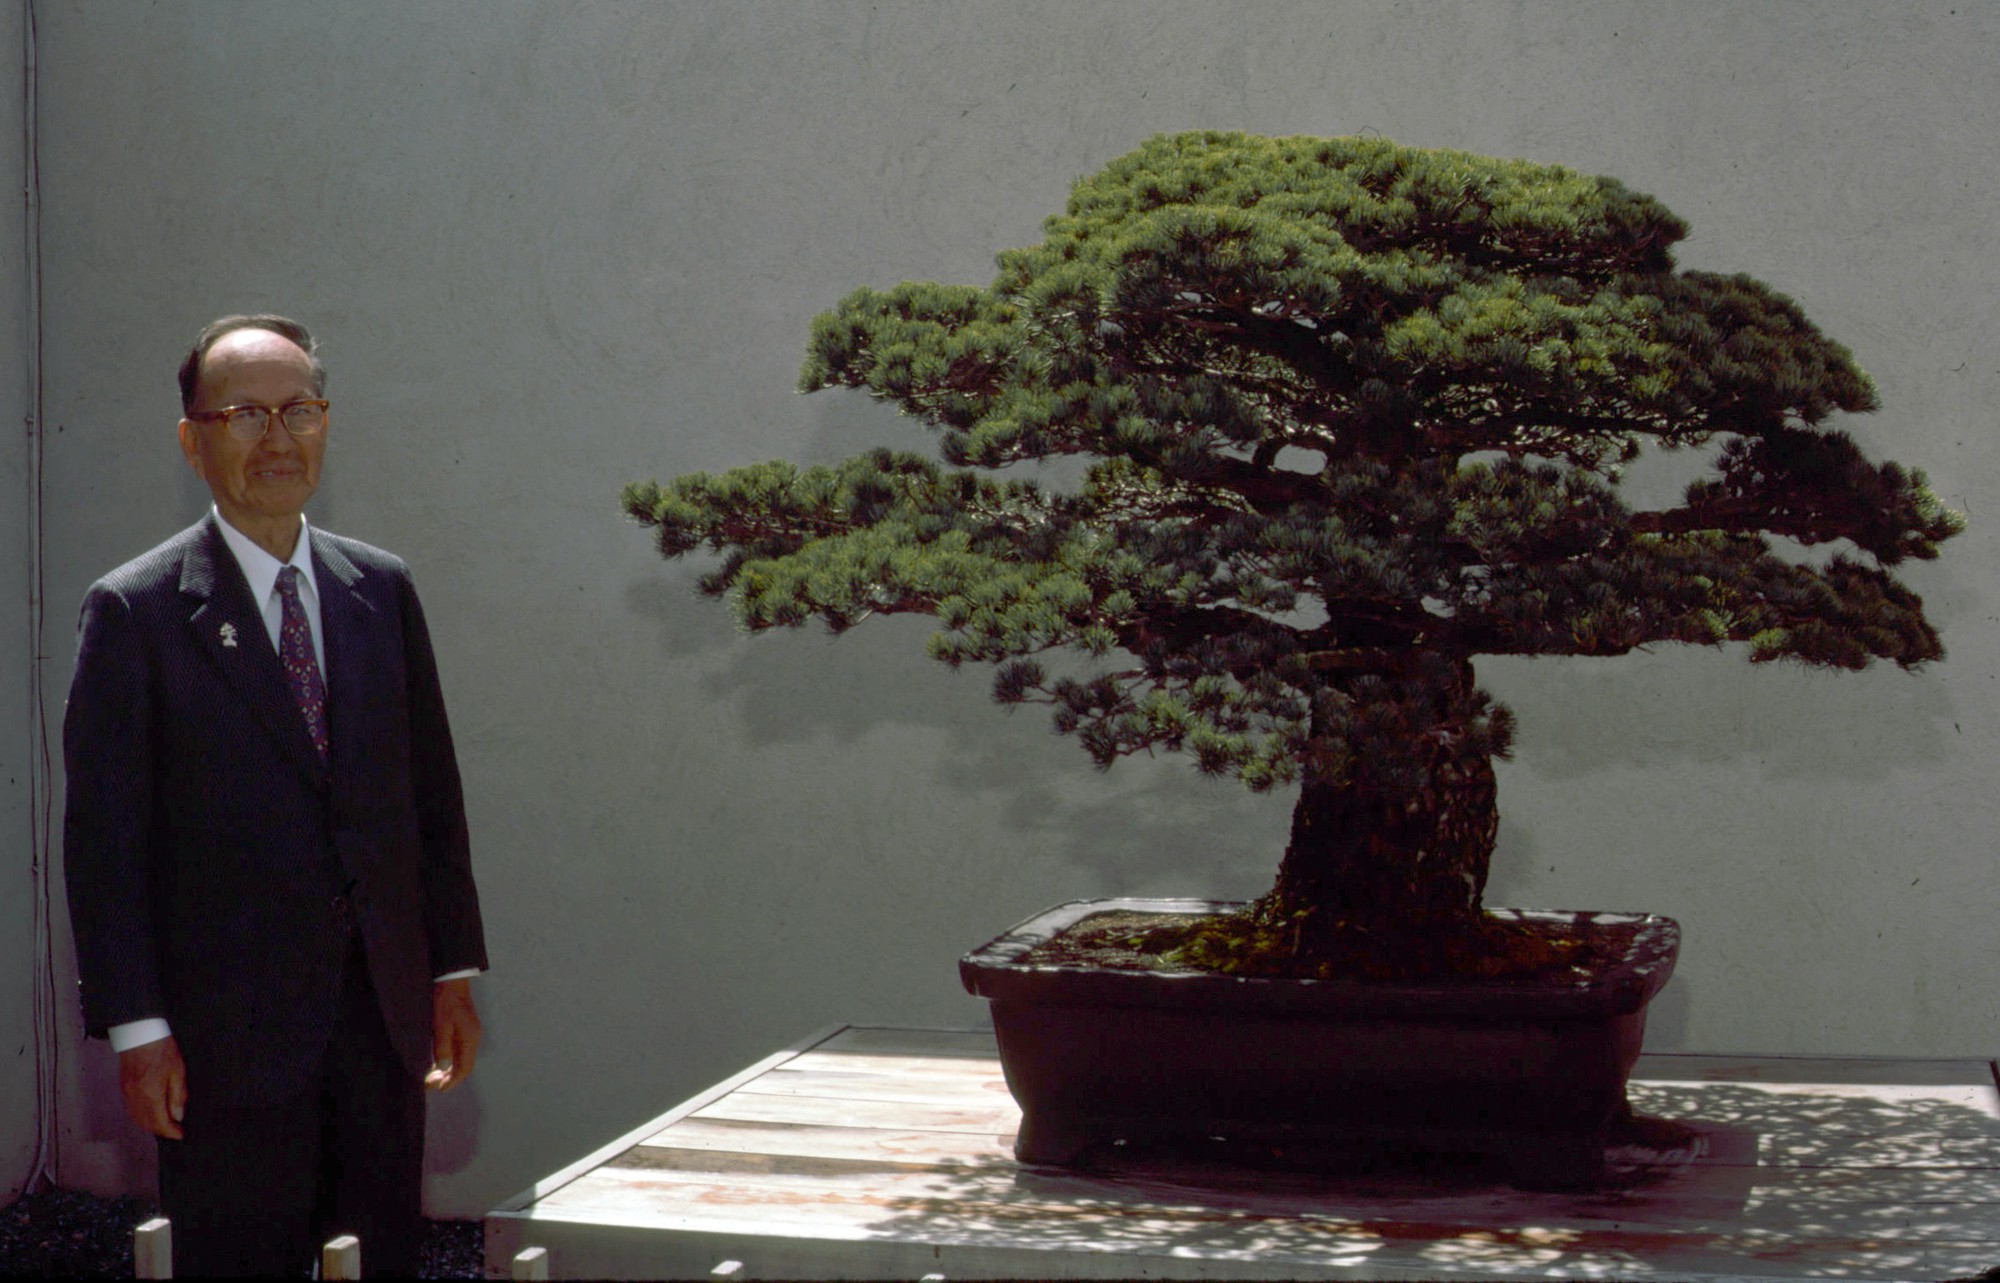 Câu chuyện của cây bonsai Nhật Bản 400 tuổi vẫn sống sót sau khi bom nguyên tử thả xuống Hiroshima - Ảnh 6.